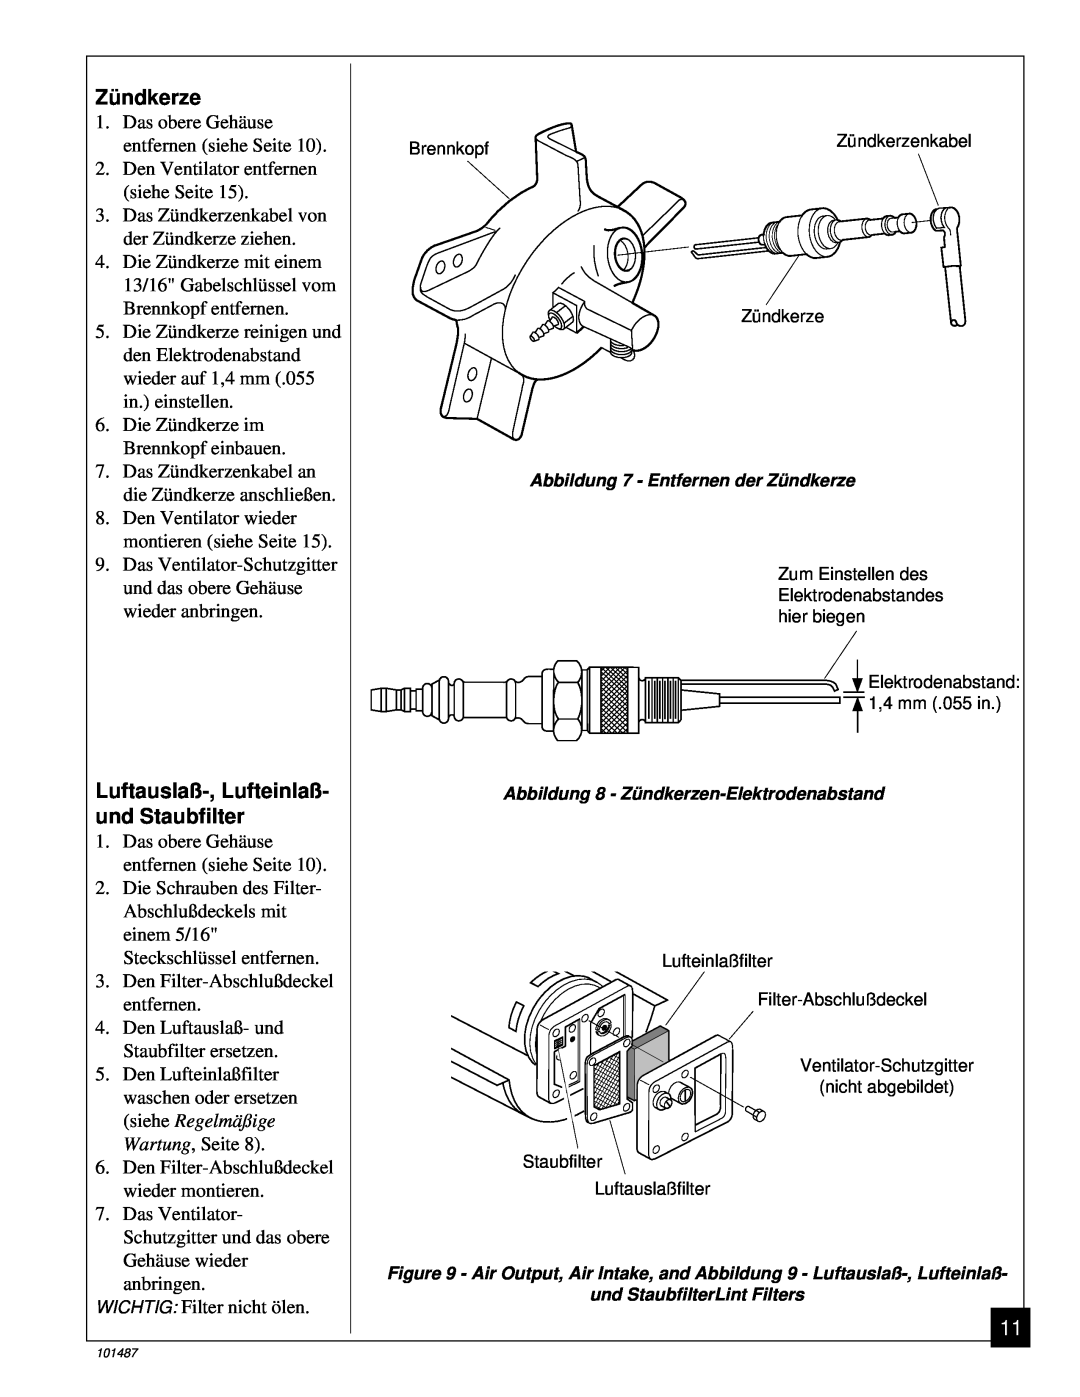 Master Lock BH150CE owner manual Zü ndkerze, Luftauslaß-,Lufteinlaß- und Staubfilter 